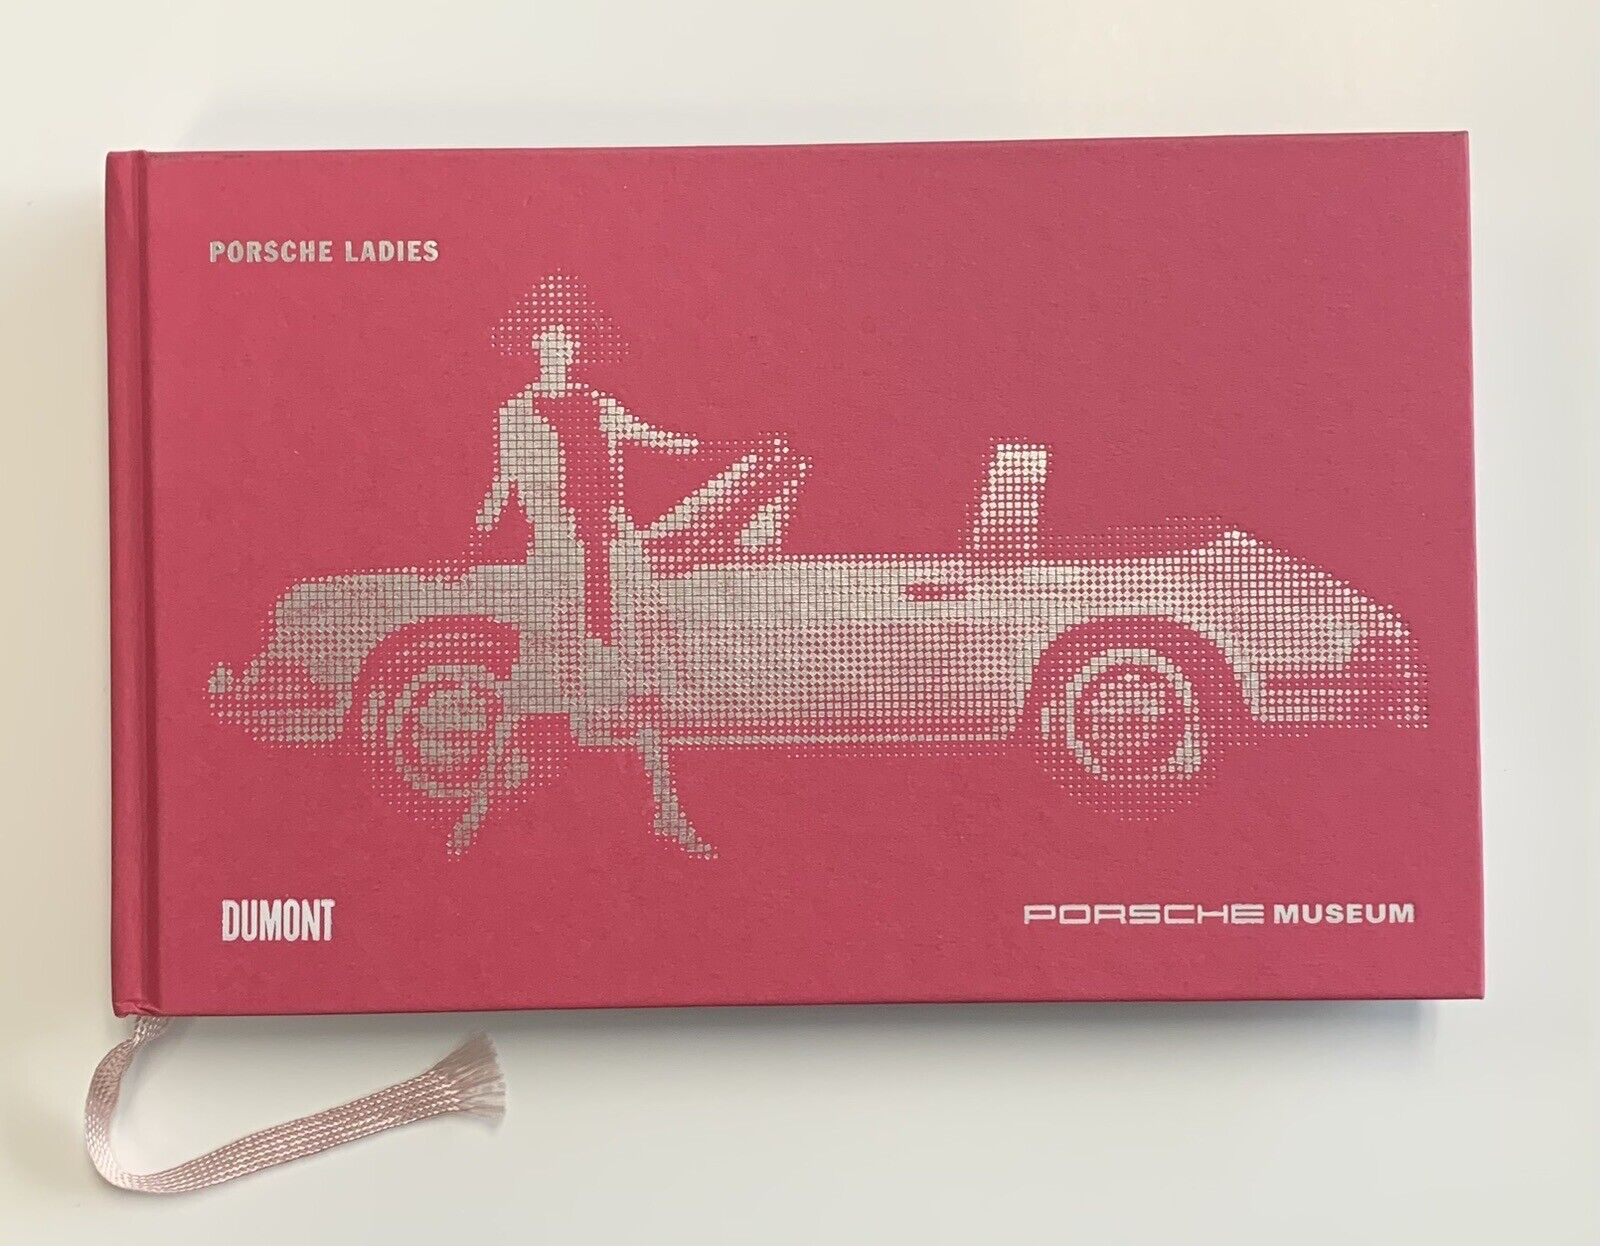 Porsche Museum “Porsche Ladies” Dumont Hardcover Book